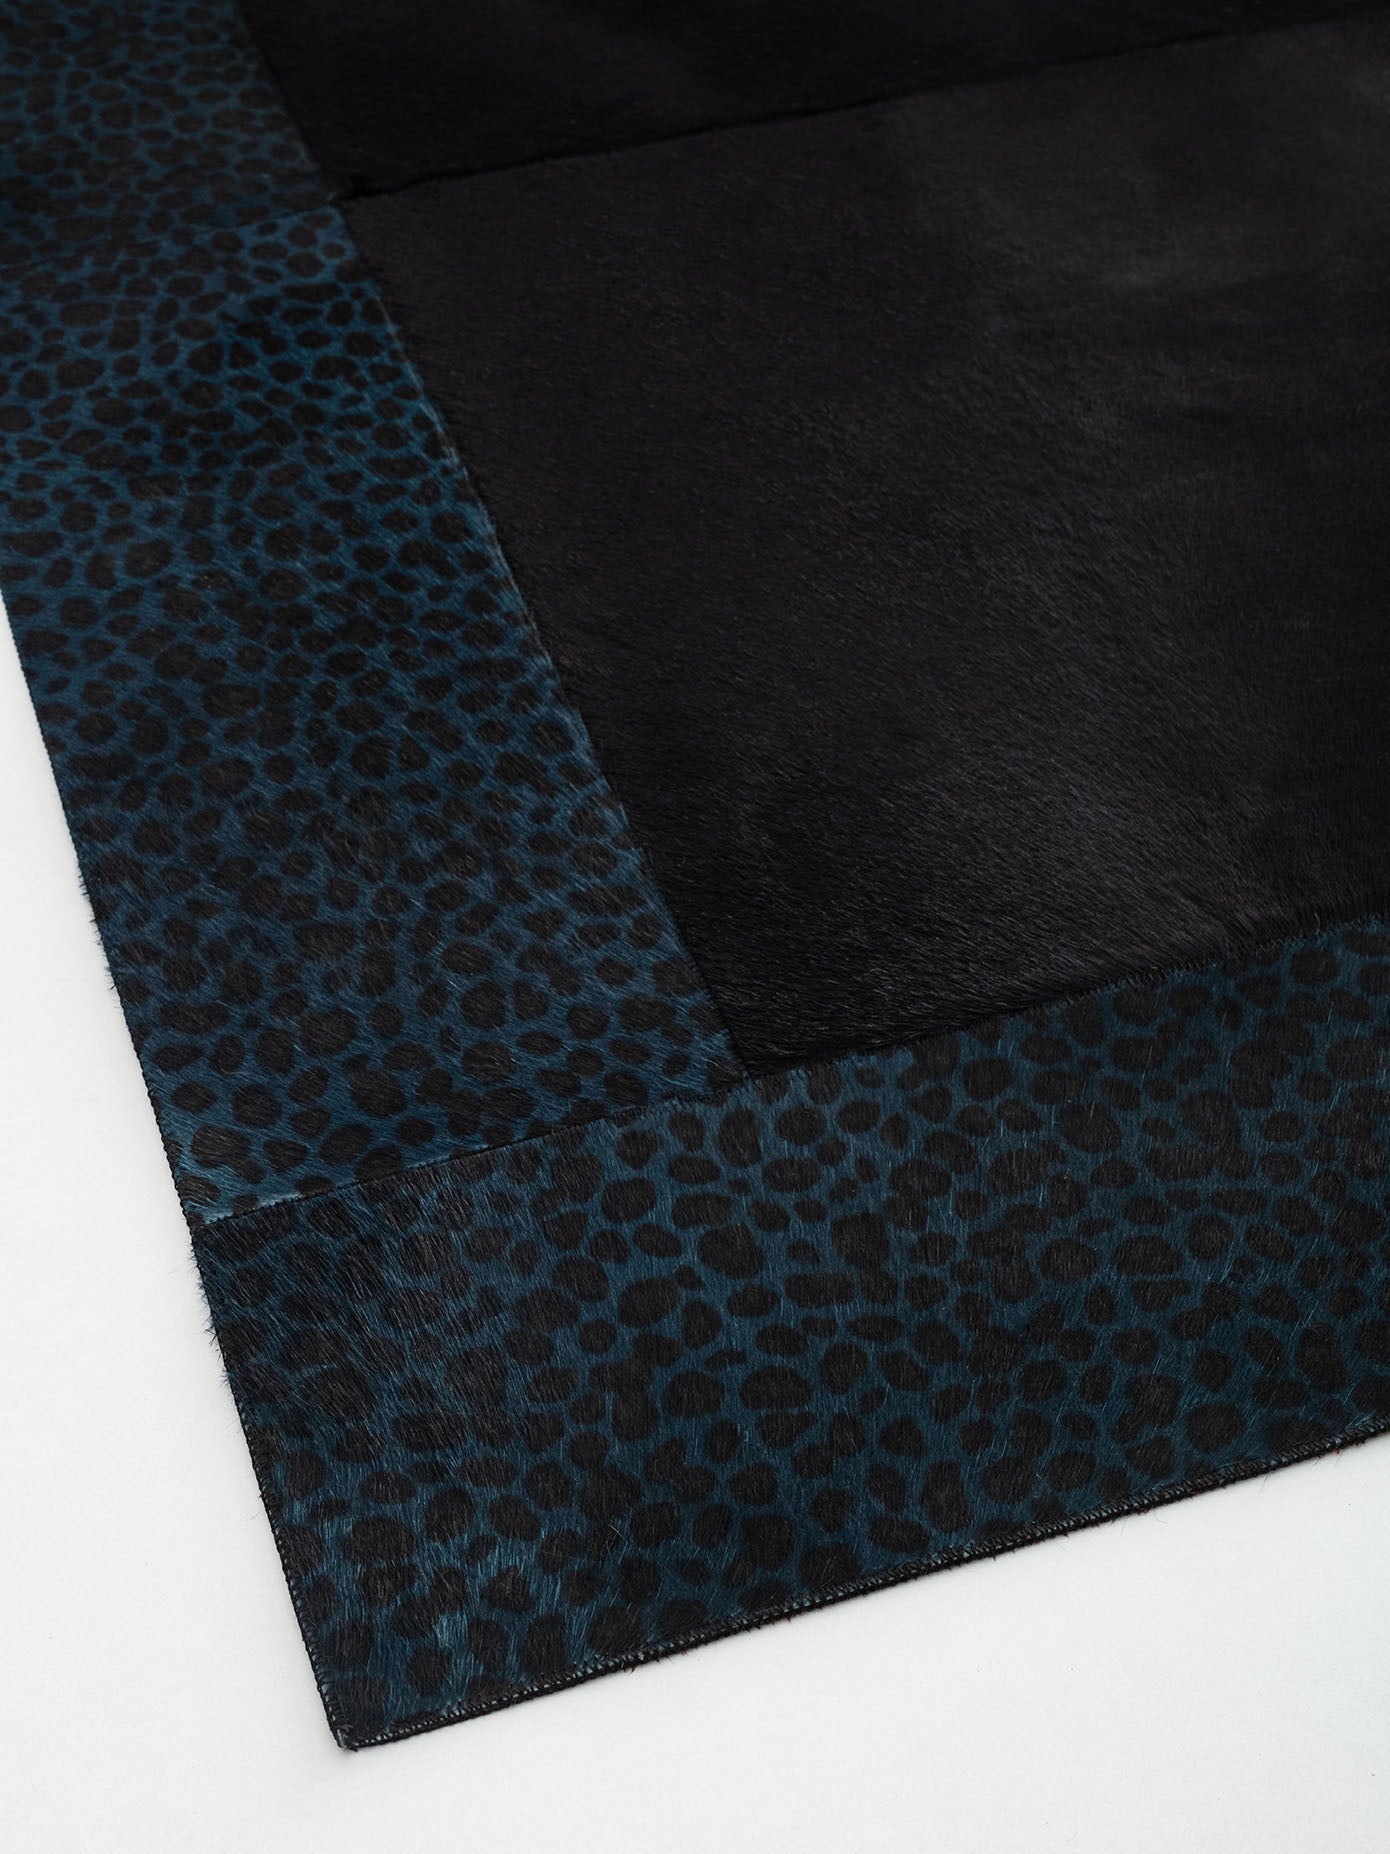 Türkisfarbener Leopard bedruckter schwarzer Lederteppich